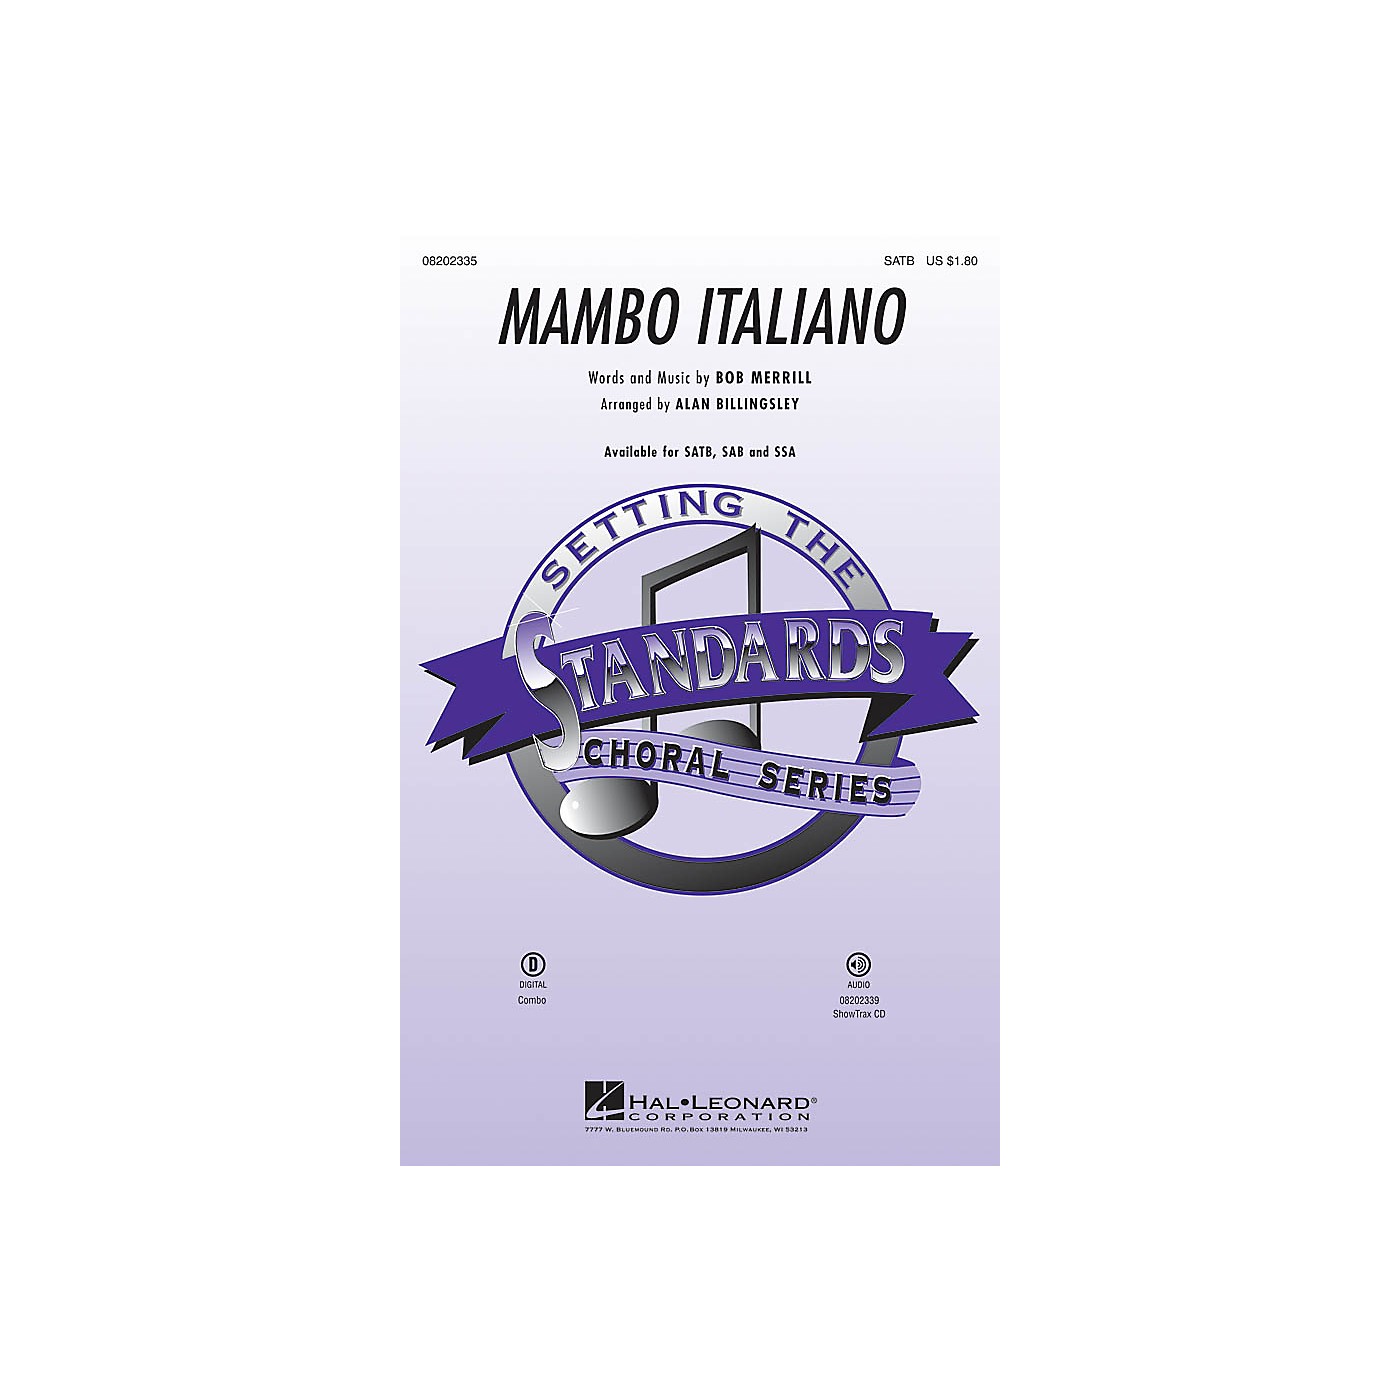 Hal Leonard Mambo Italiano (ShowTrax CD) ShowTrax CD by Rosemary Clooney Arranged by Alan Billingsley thumbnail